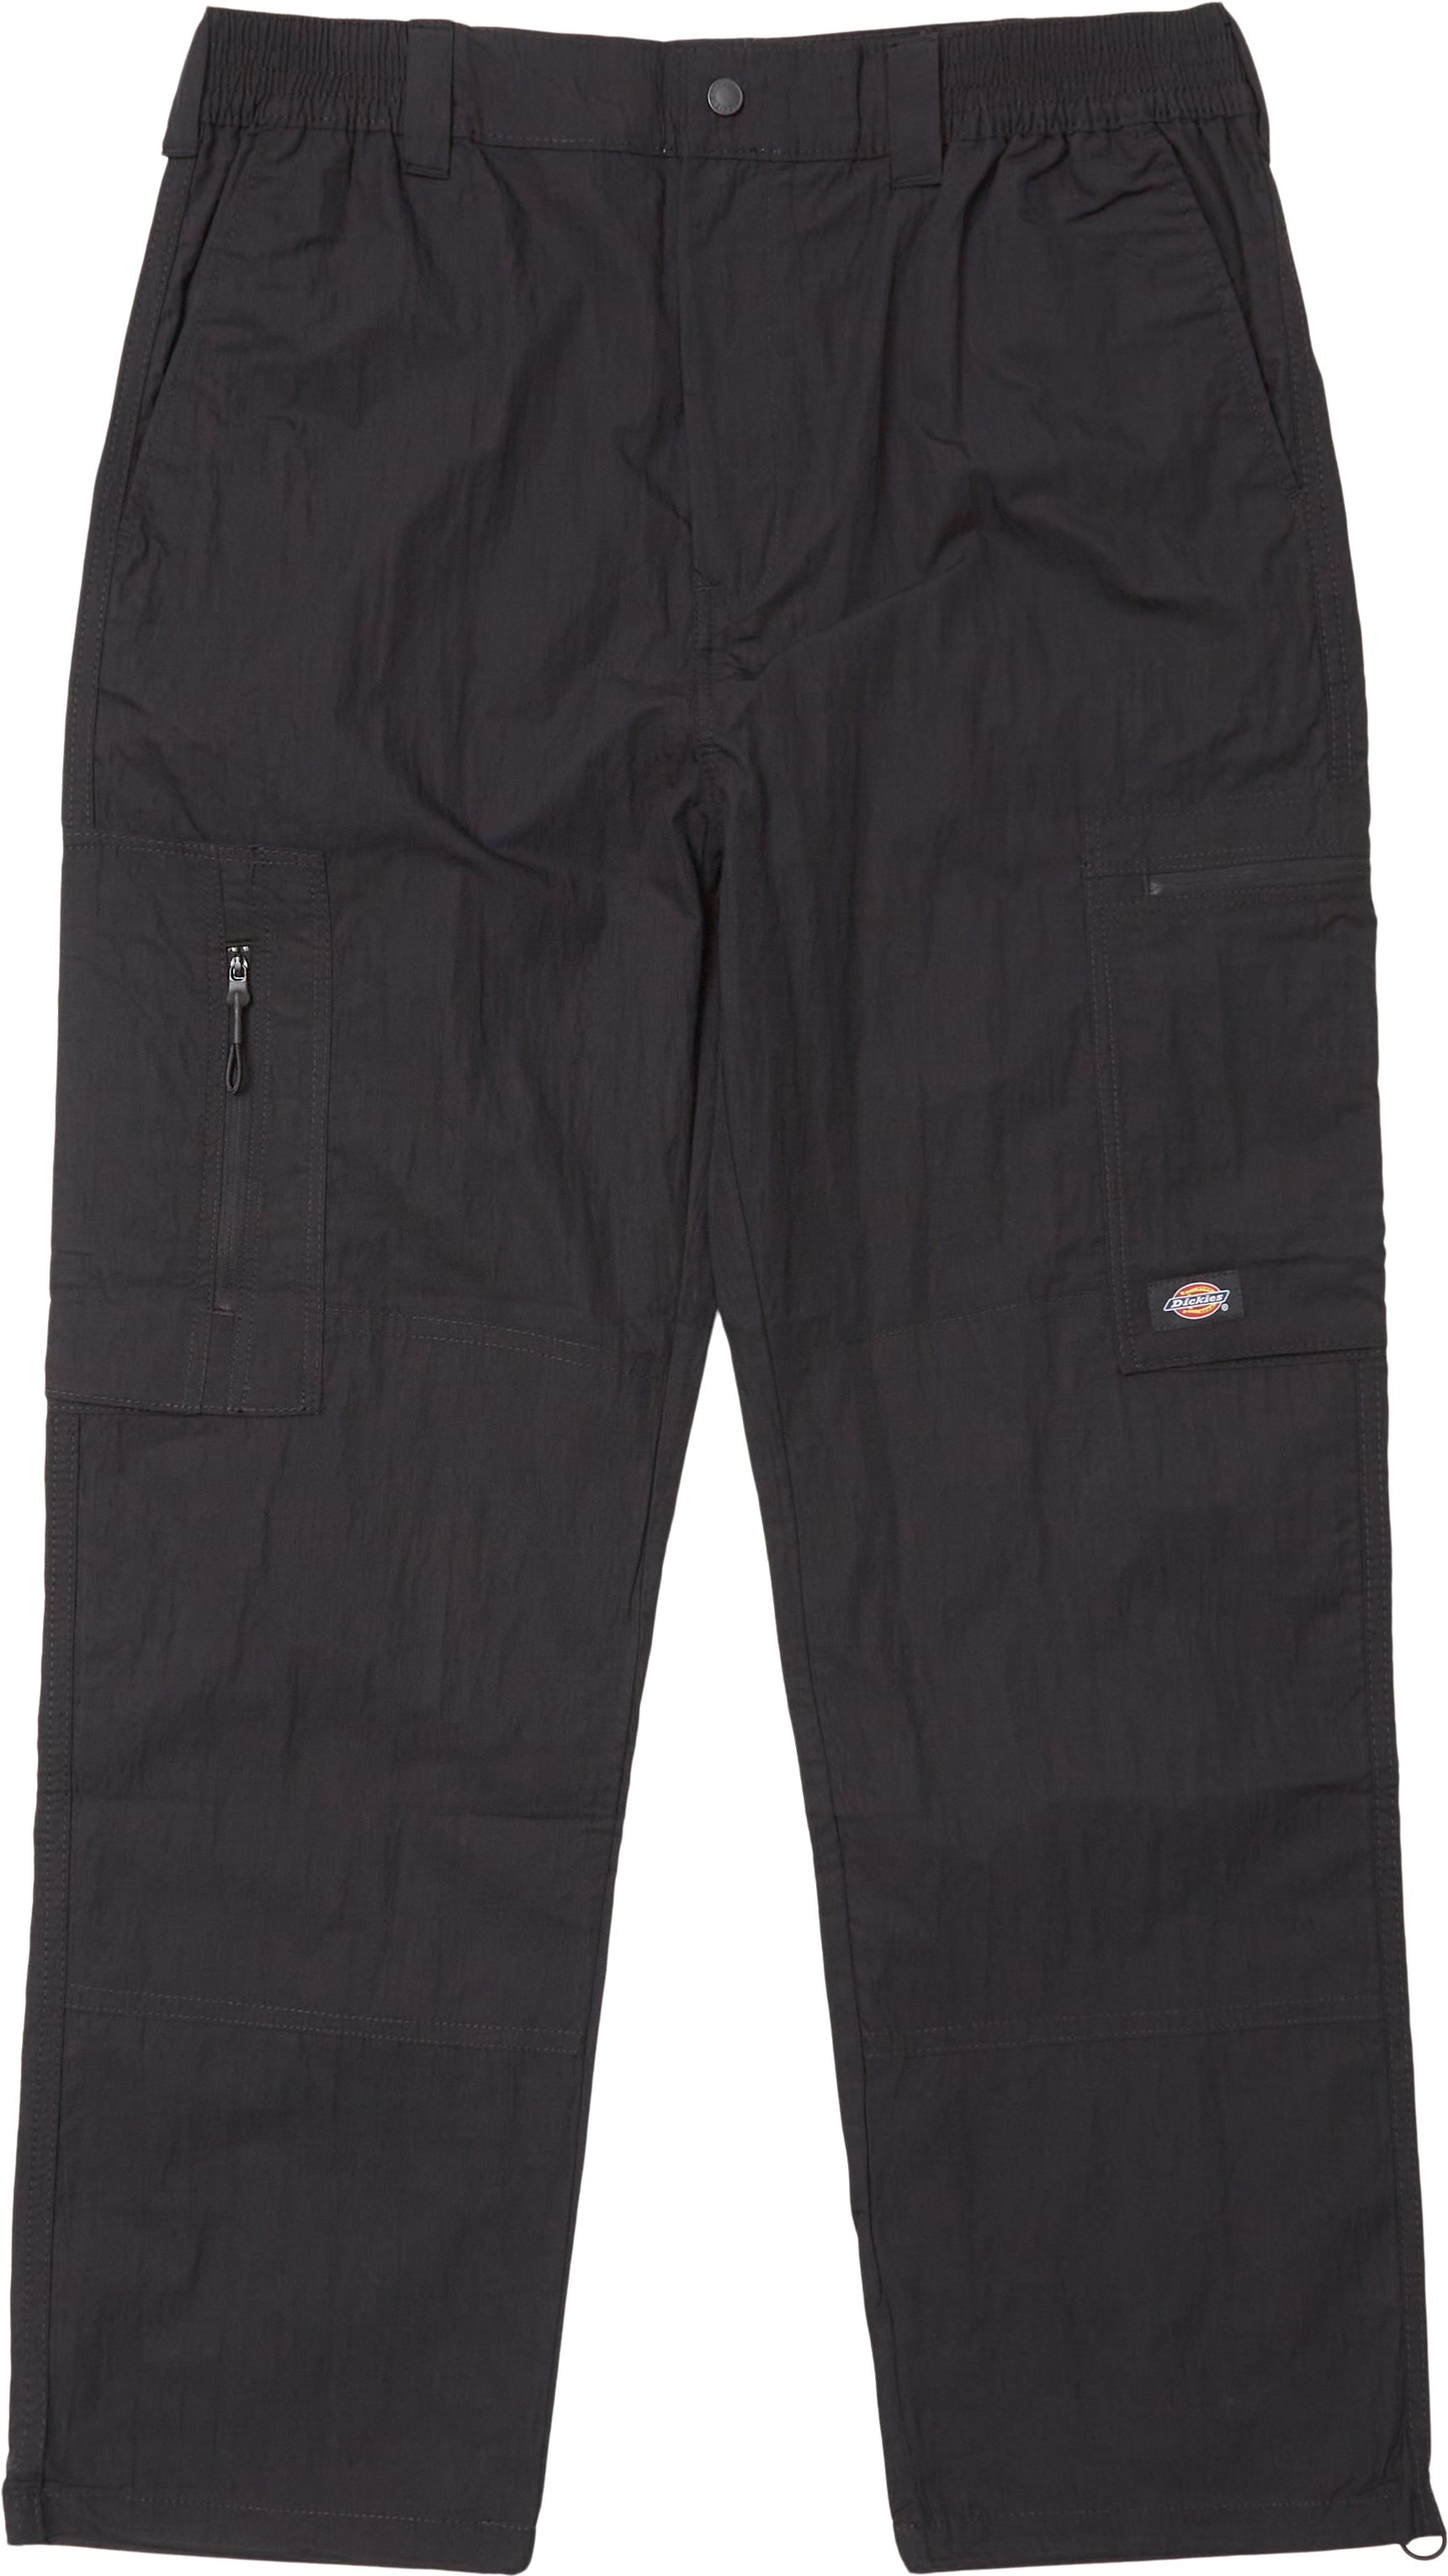 Glacier Pants - Trousers - Loose fit - Black